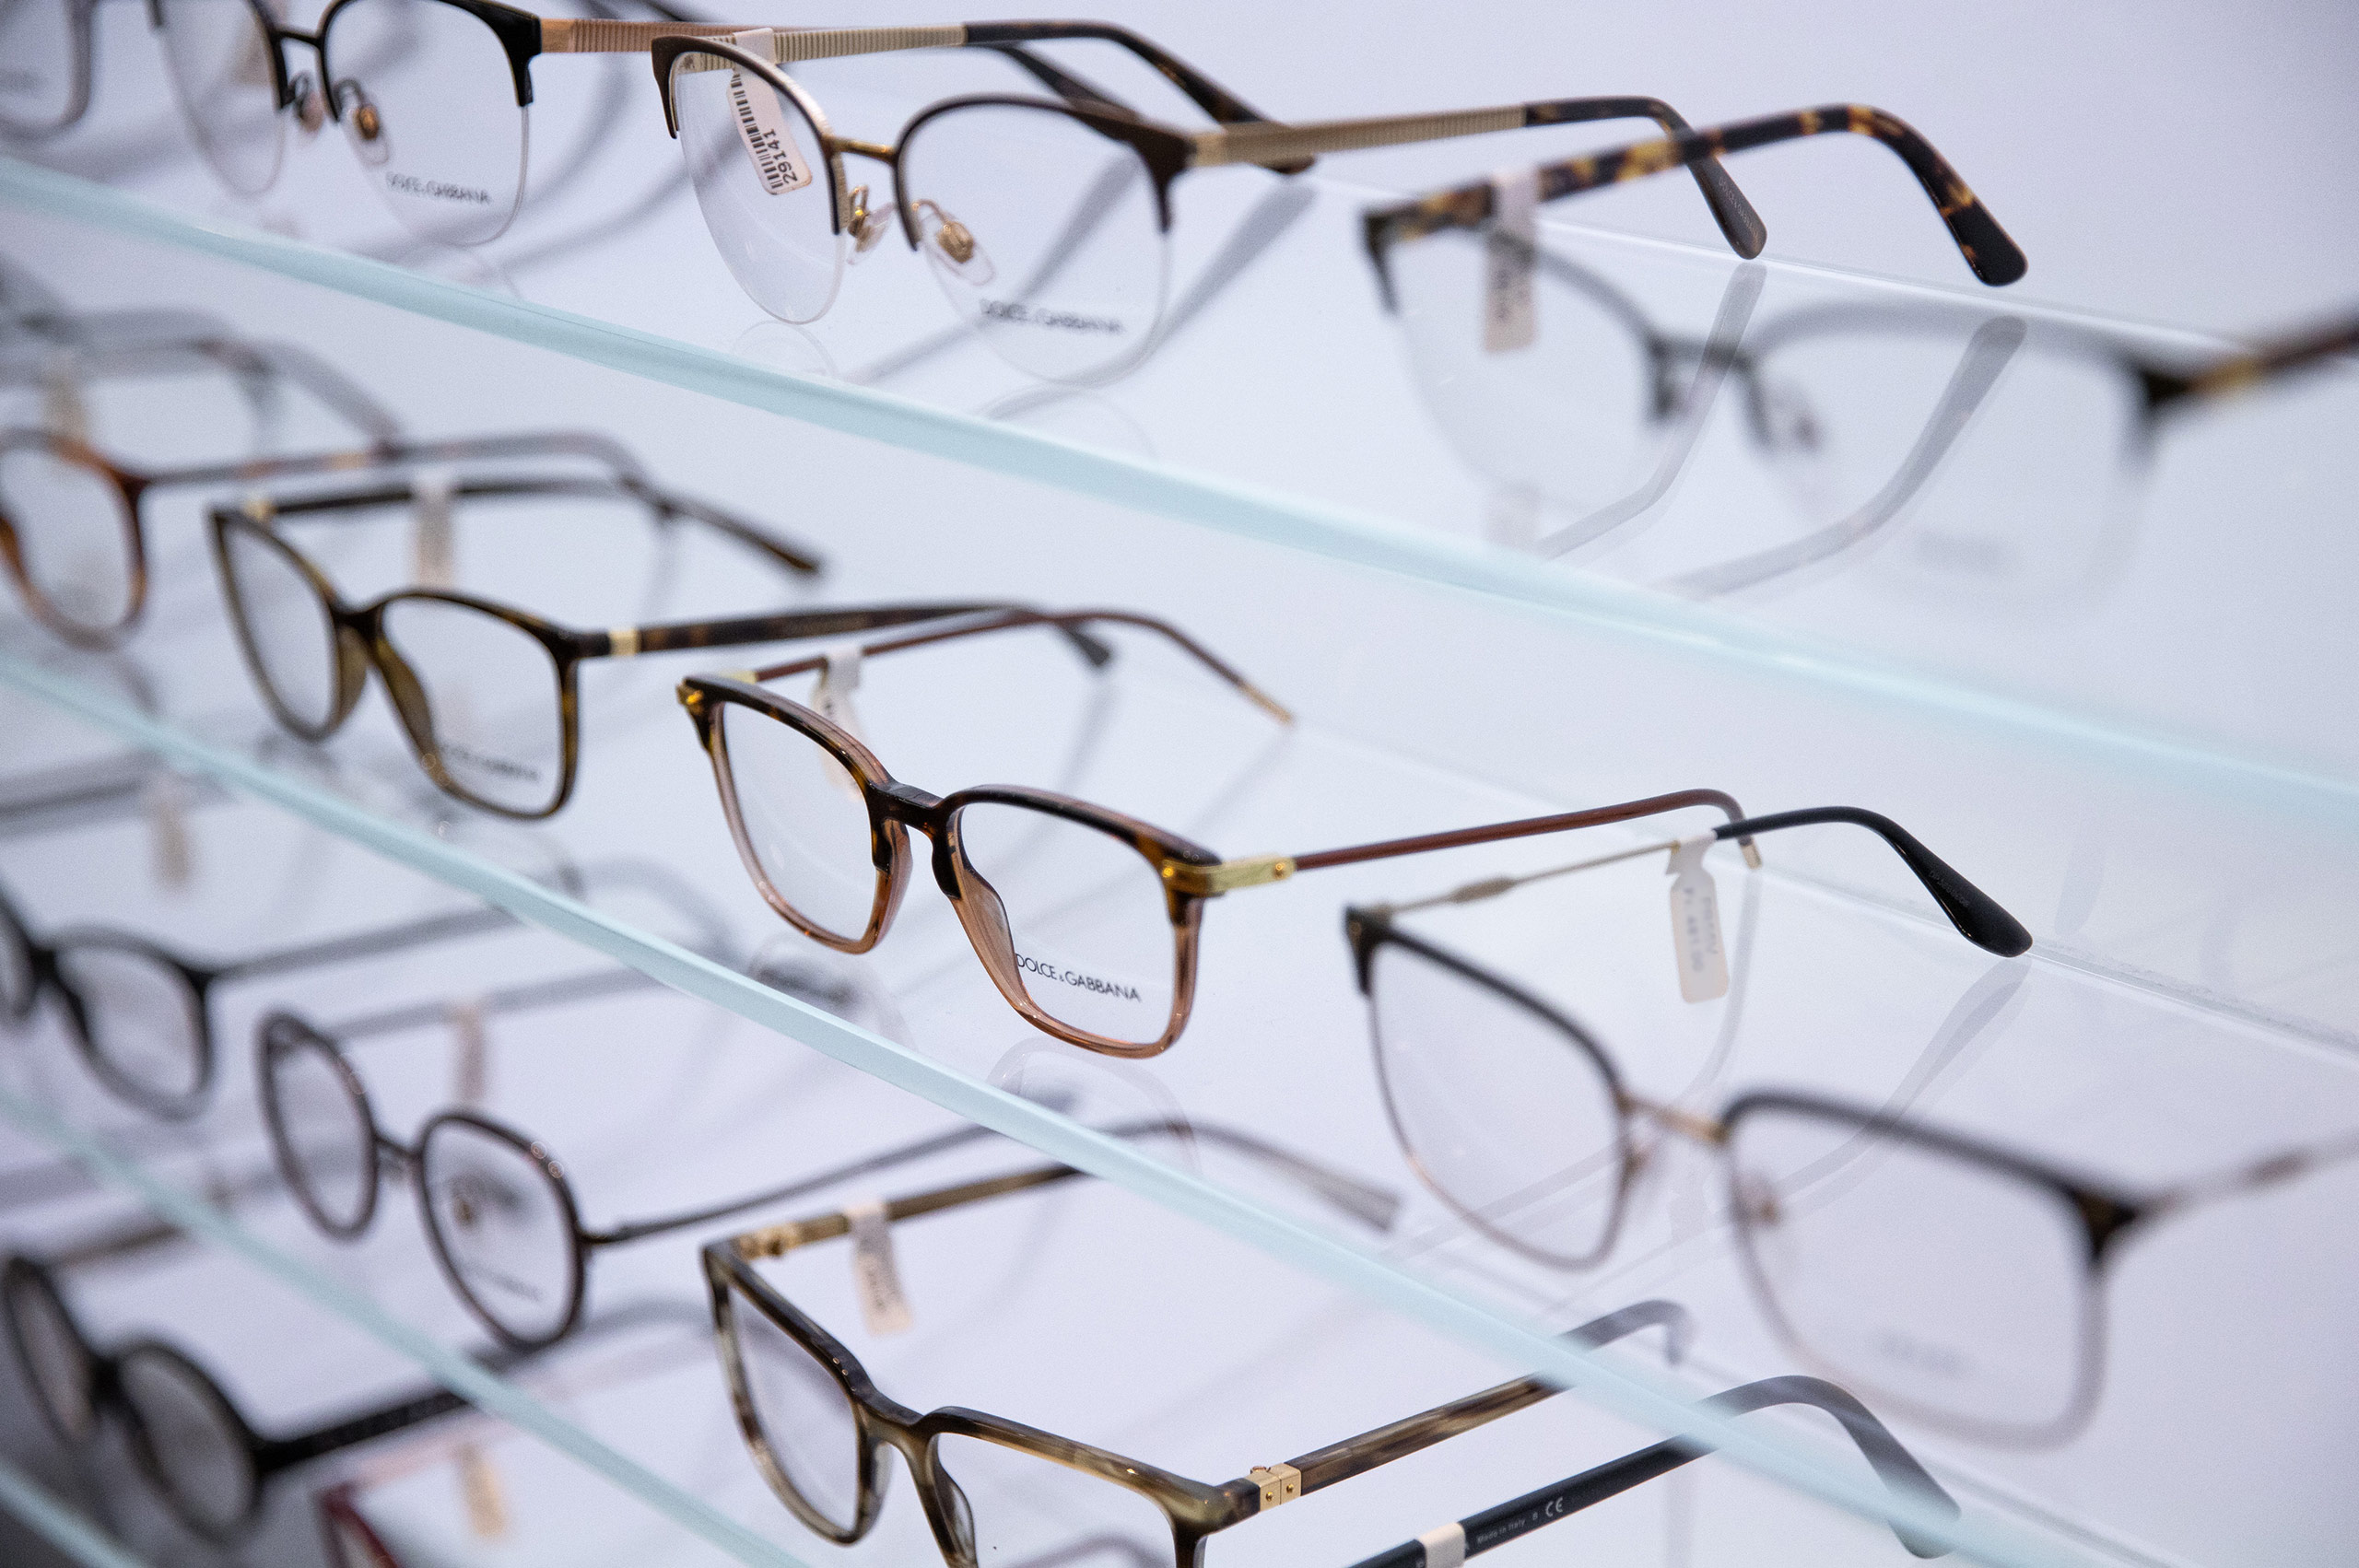 Seedamm Optik - Optiker Päffikon - Optiker Schweiz - Brillen - Gleitsichtbrillen - Sonnenbrillen - Kontaktlinsen - Linsenmittel - Pflegemittel - Herrenbrillen - Damenbrillen - Kinderbrillen - Lesebrillen - Blaufilter-Brillen - Varilux-Spezialist - Gleitsichtgläser- Sehtest - Myopiemanagement - Brillenglasbestimmung - Optometrische Gesundheitsuntersuchung - Kontaktlinsen-Anpassung - Kontaktlinsen-Nachkontrolle - Kontaktlinsen-Lieferservice